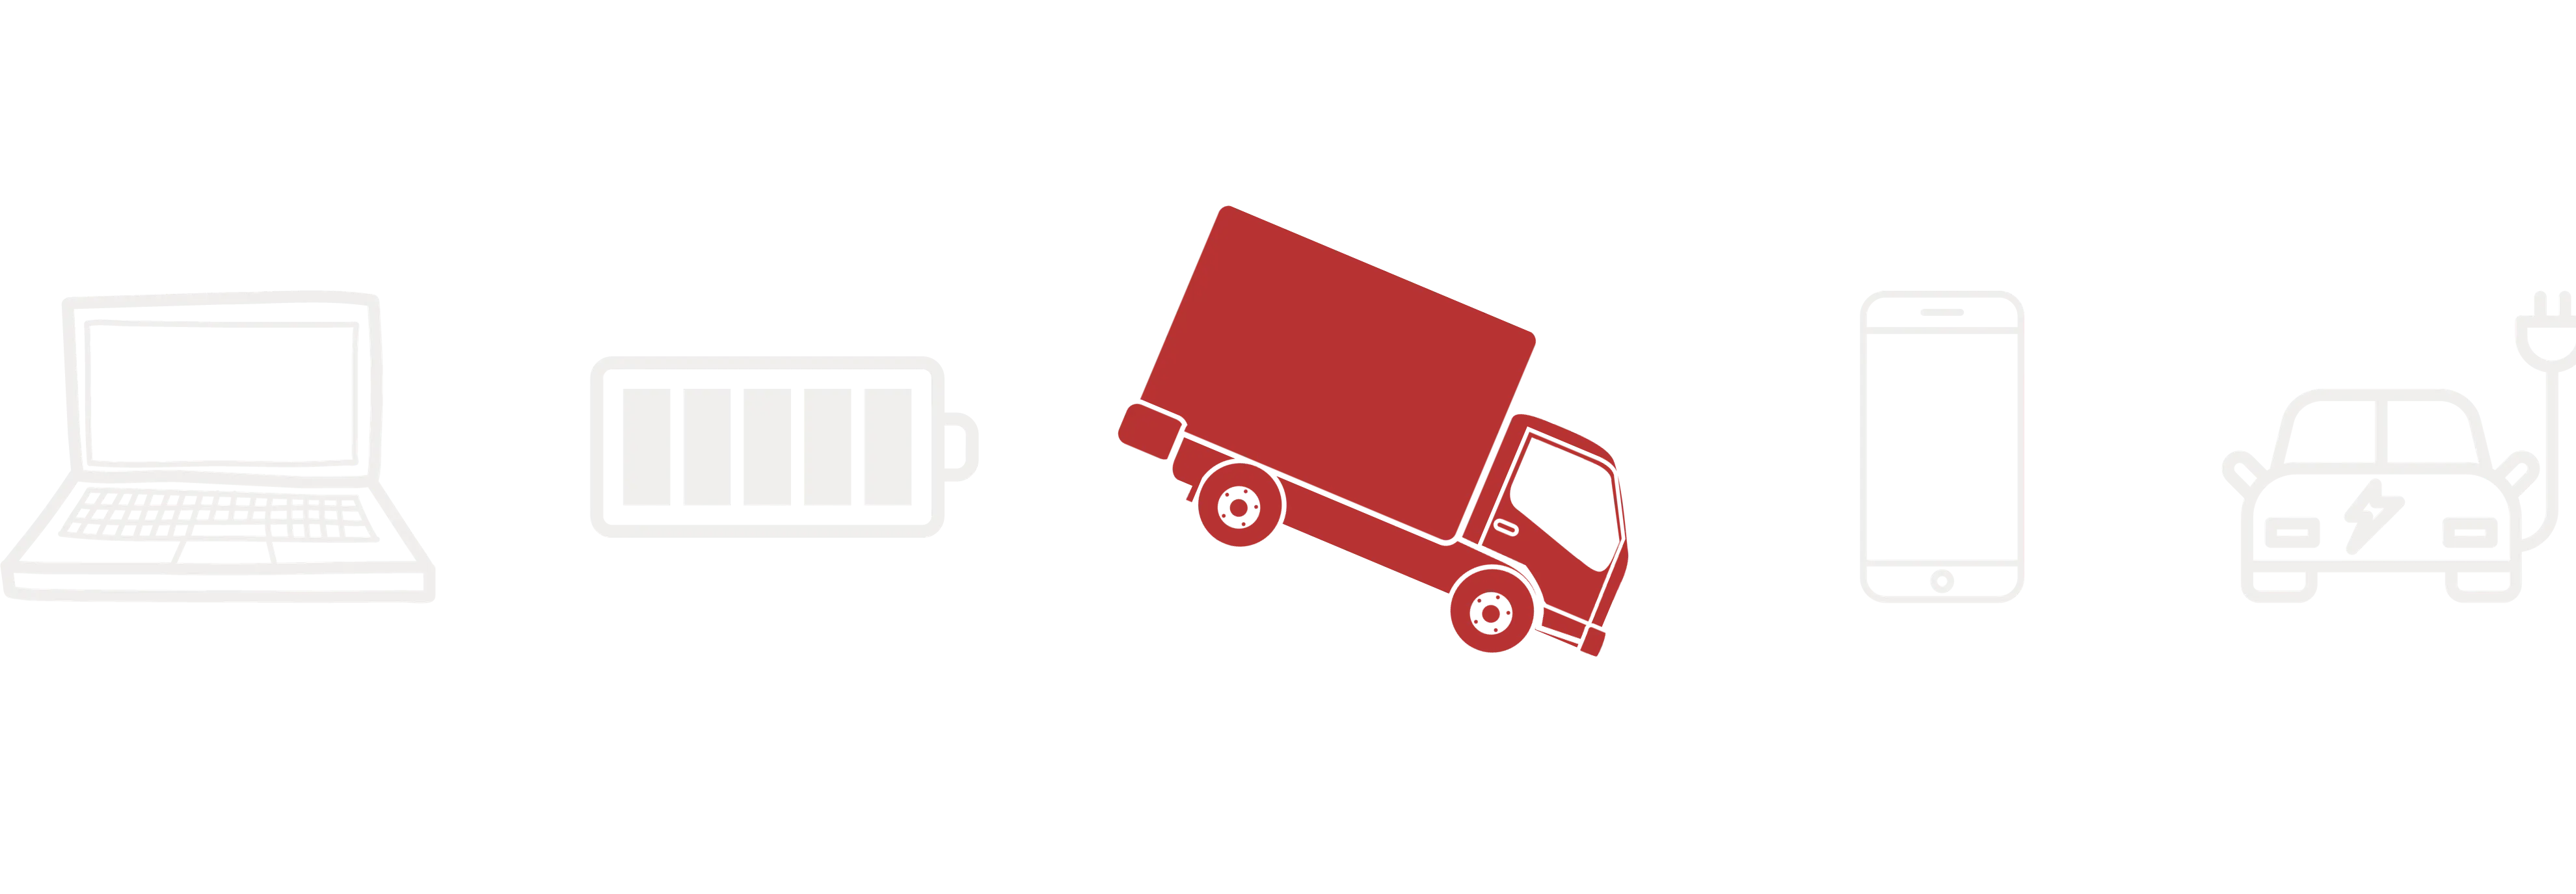 Illustration mit einem Laptop, einer Batterieanzeige, einem LKW, einem Smartphone und einem E-Auto.